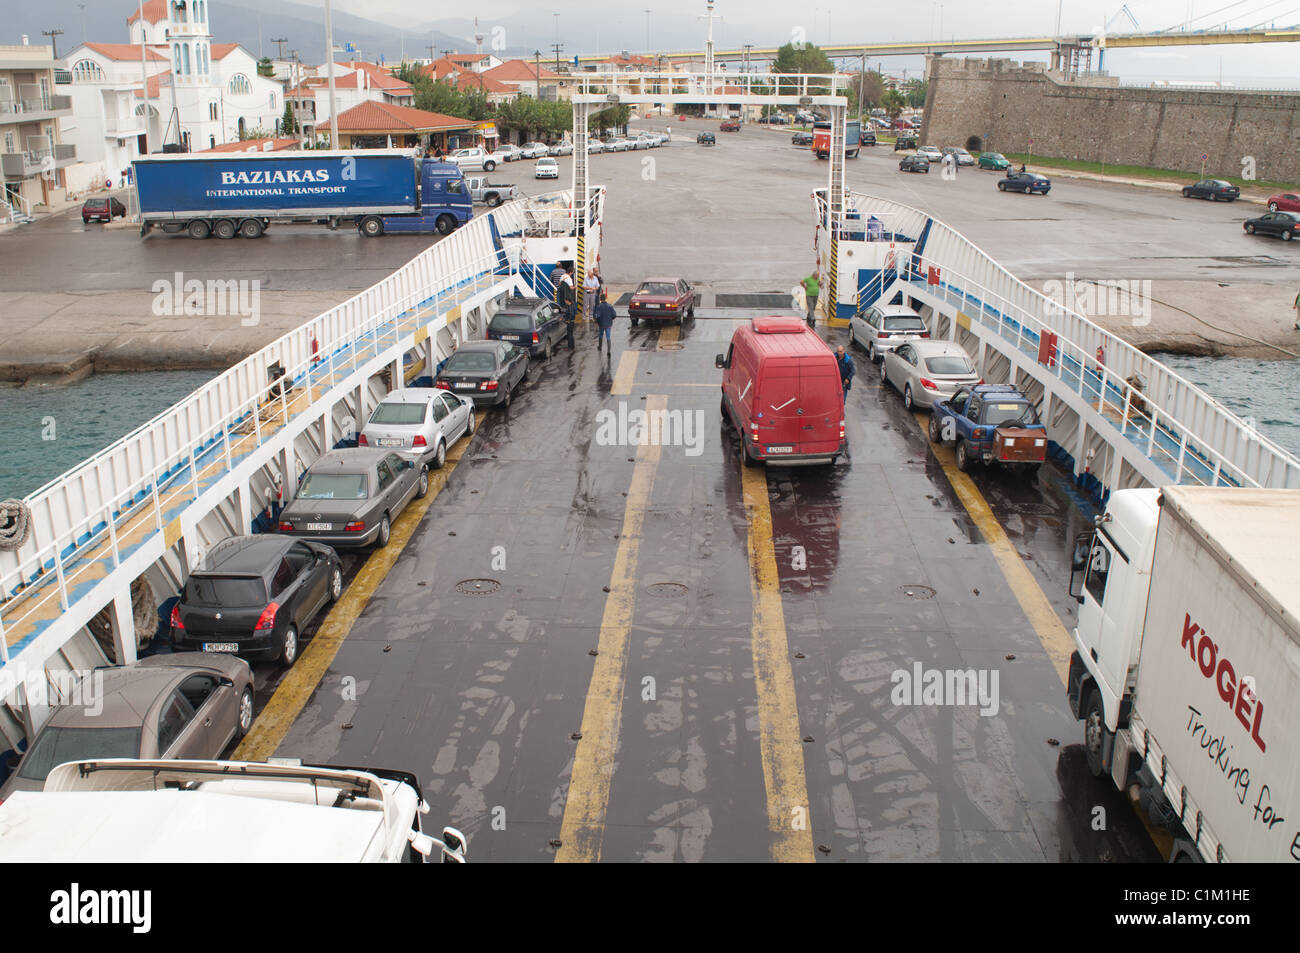 Il servizio di traghetto continua anche con l'installazione del nuovo ponte Rio-Antirion vicino a Patrasso, Grecia. Foto Stock